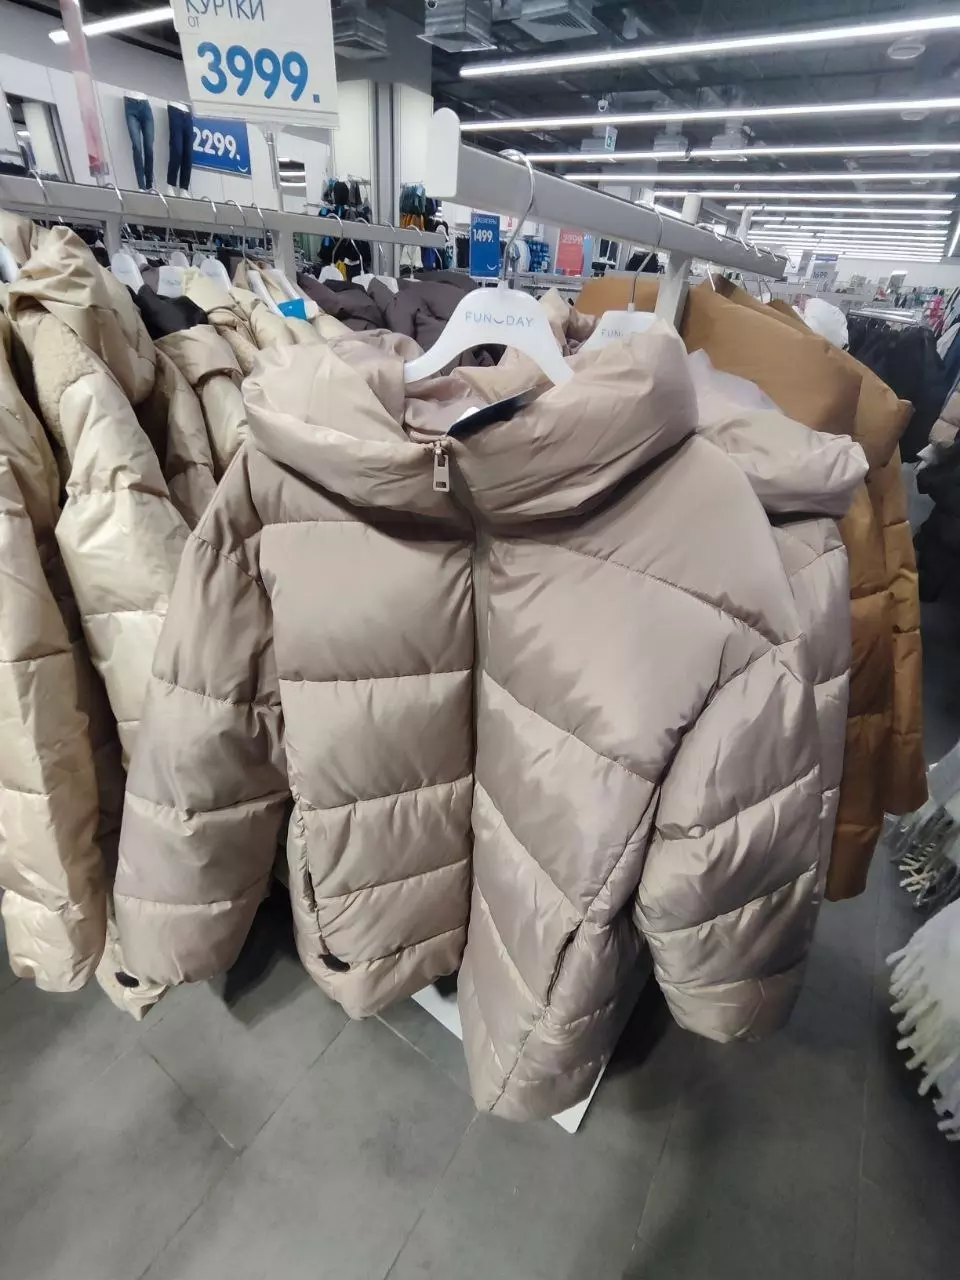 Ассортимент курток в магазине FunDay